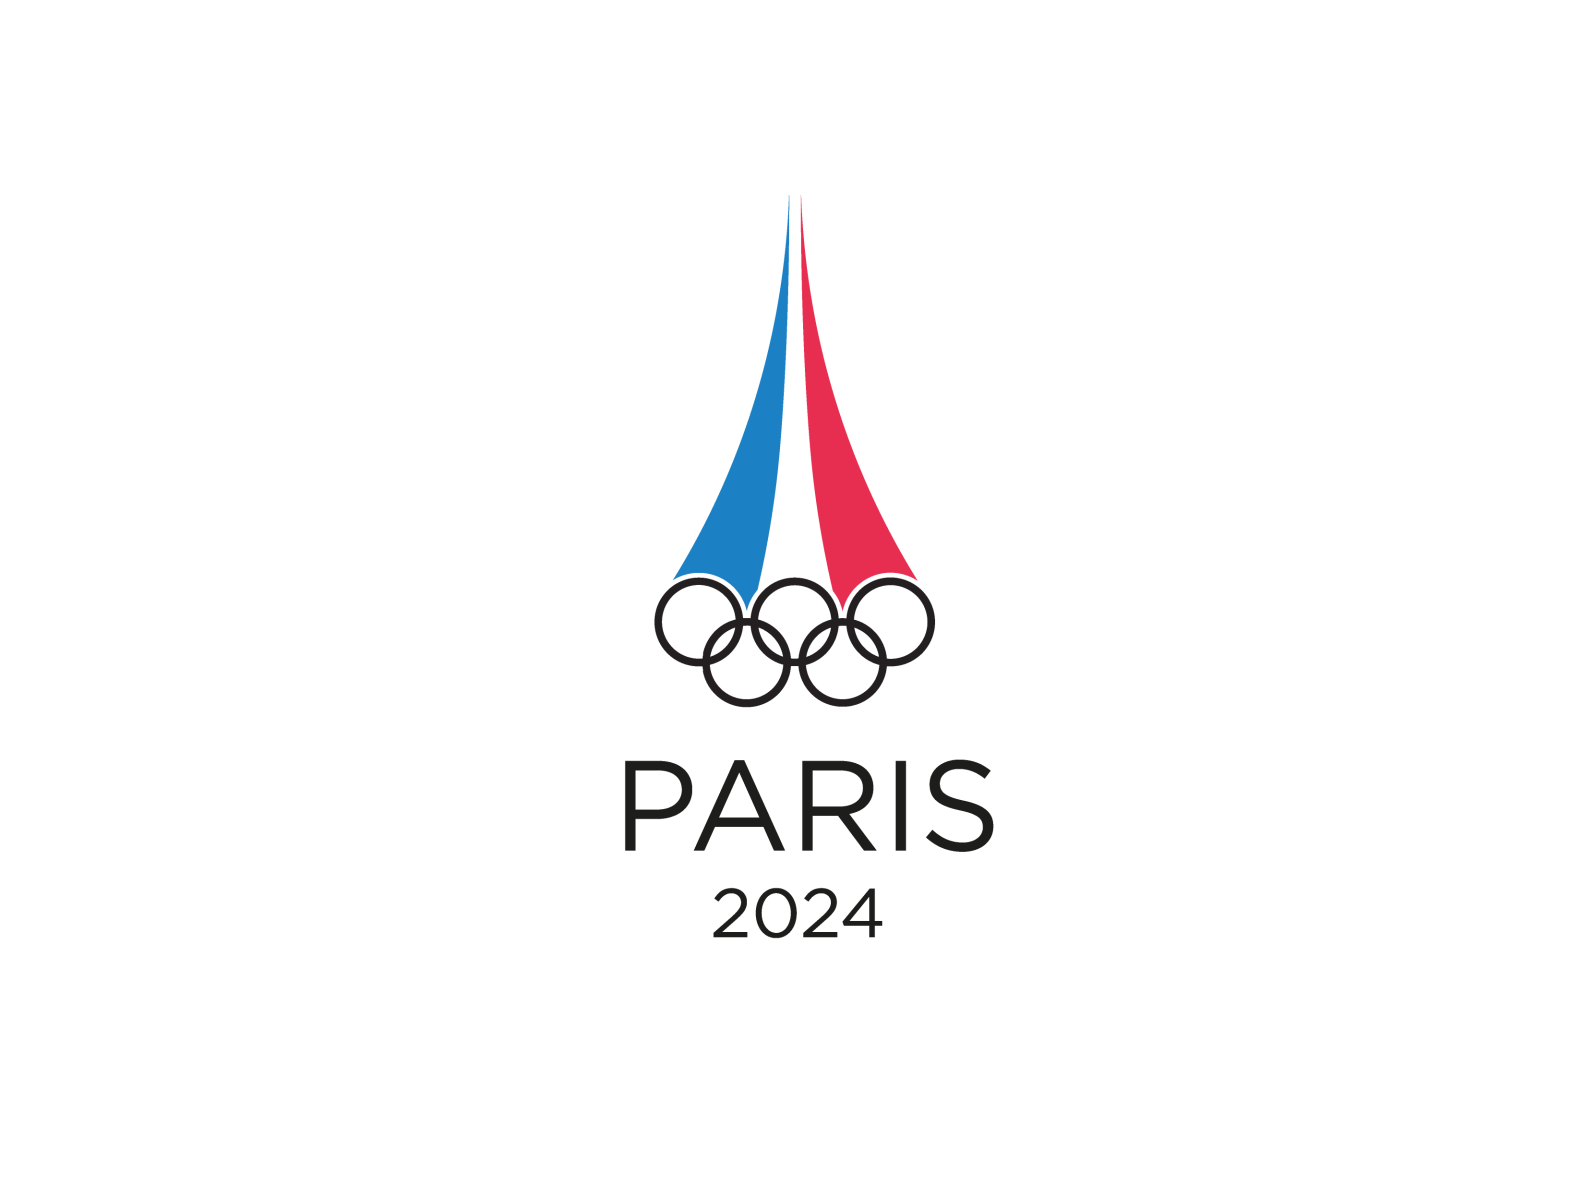 Год семьи 2024 в россии презентации. Олимпийские игры в Париже 2024. Paris 2024 логотип. Paris 2024 Olympics logo.